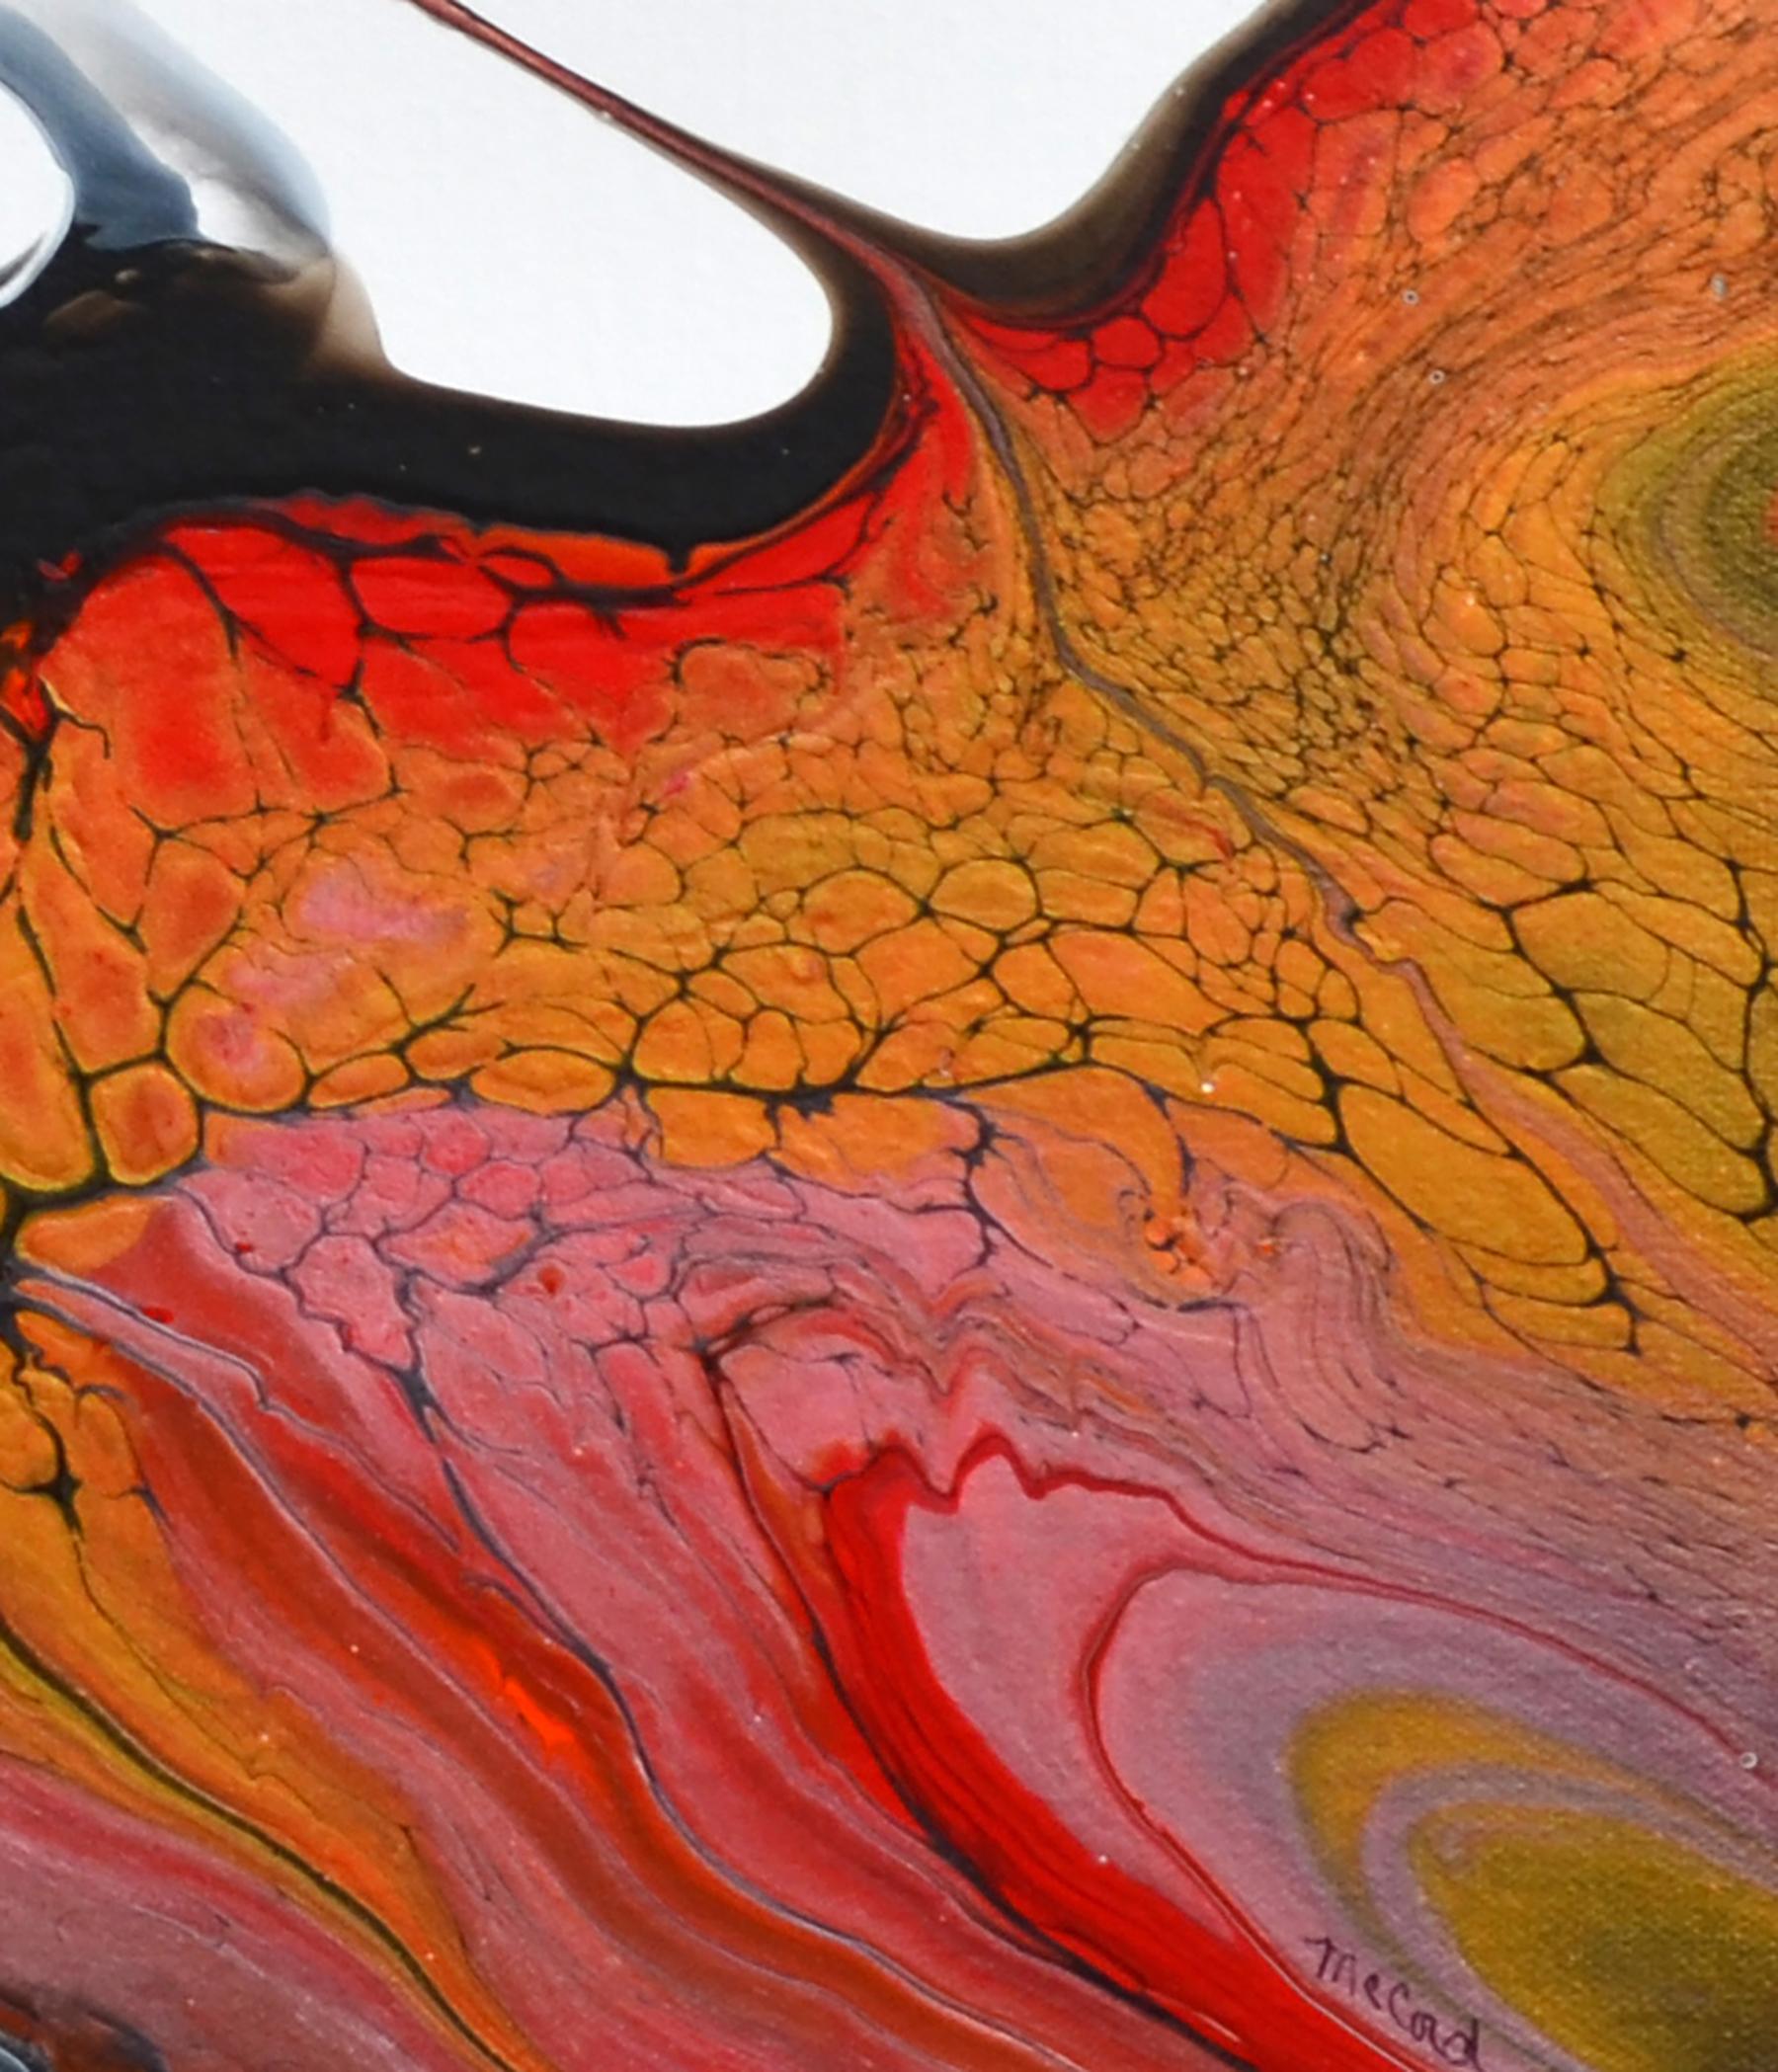 <p>Commentaires de l'artiste<br>Les formes fluides suggèrent une image d'oiseau planant au-dessus de la terre. Au milieu de l'espace blanc plat, les cellules rouges et noires donnent une impression de spontanéité et de mouvement. L'œuvre fait partie